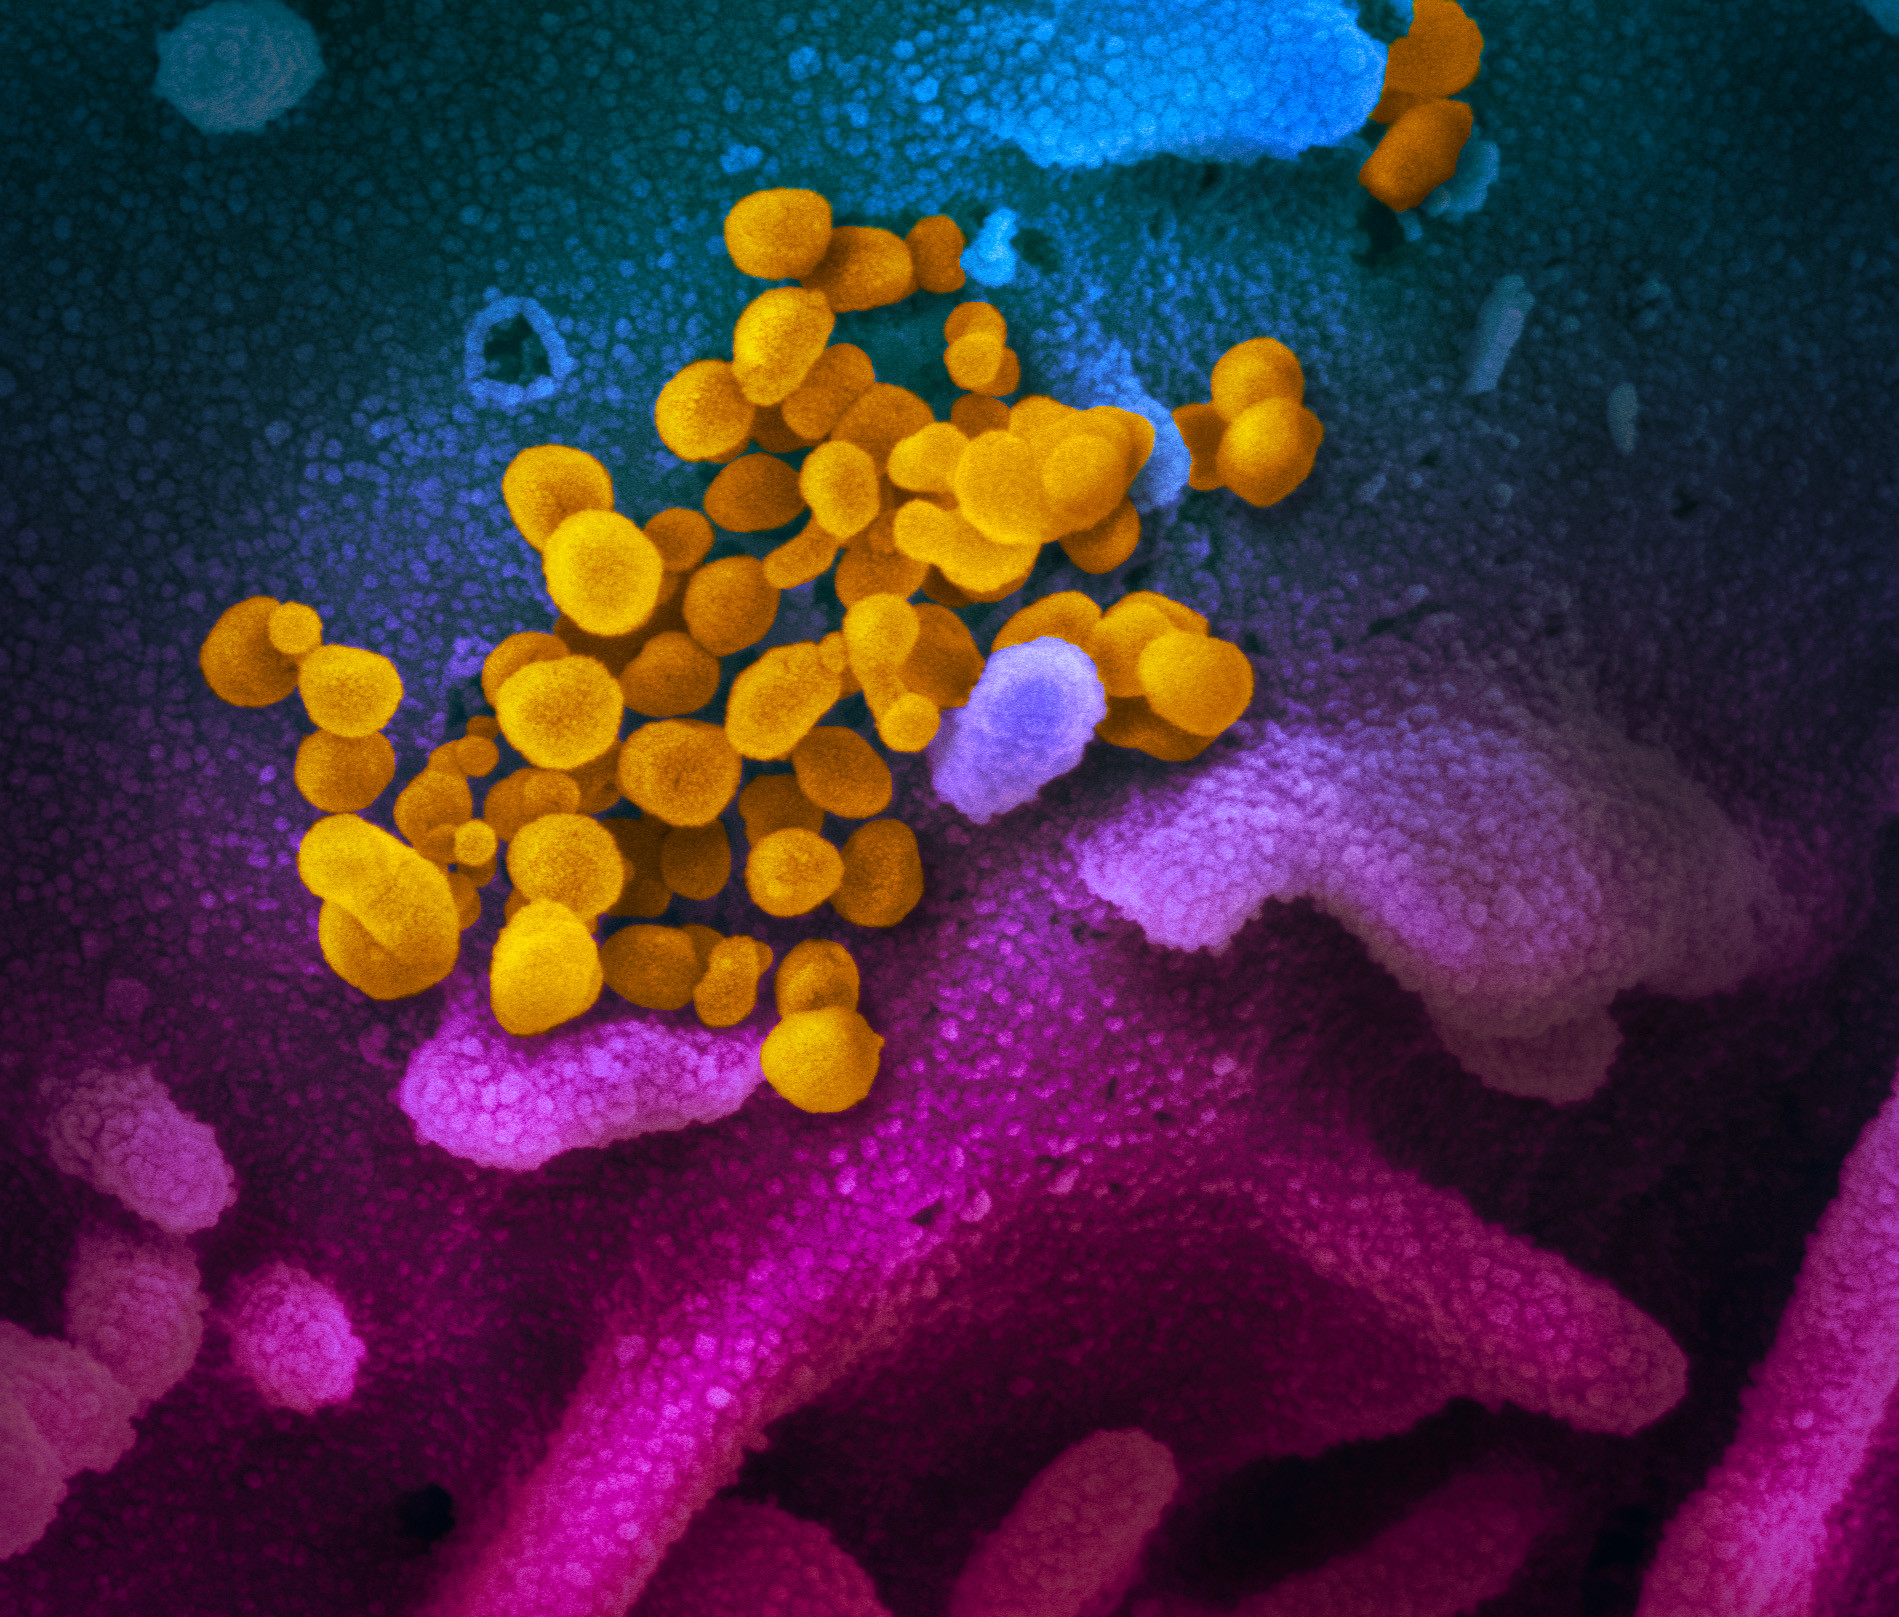 Mit tudtunk meg az elmúlt hónapban a koronavírusról, és mi az, amit nagyon szeretnénk megtudni?